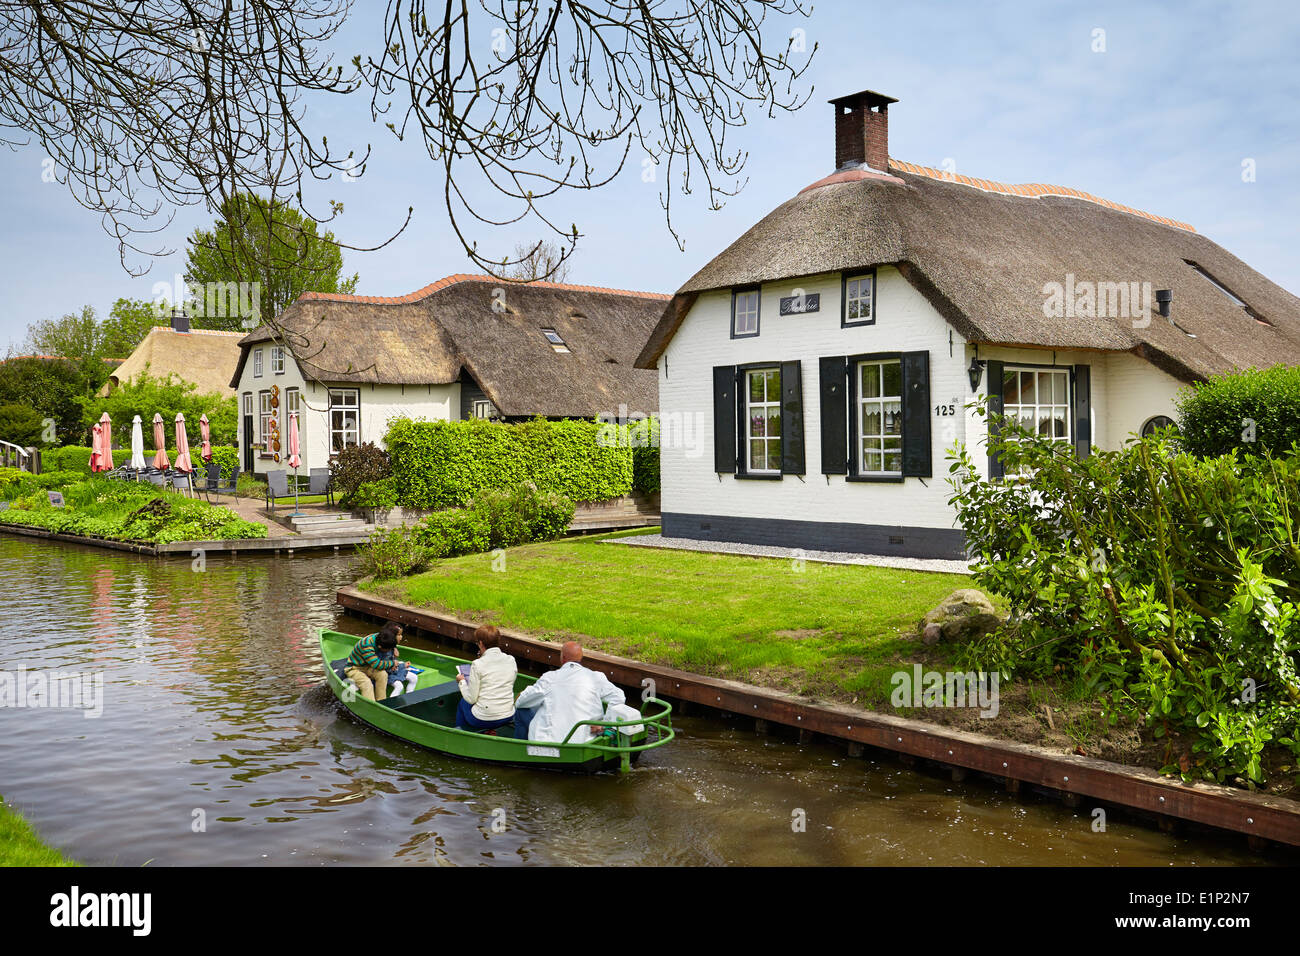 Canal de Giethoorn village - Hollande Pays-Bas Banque D'Images